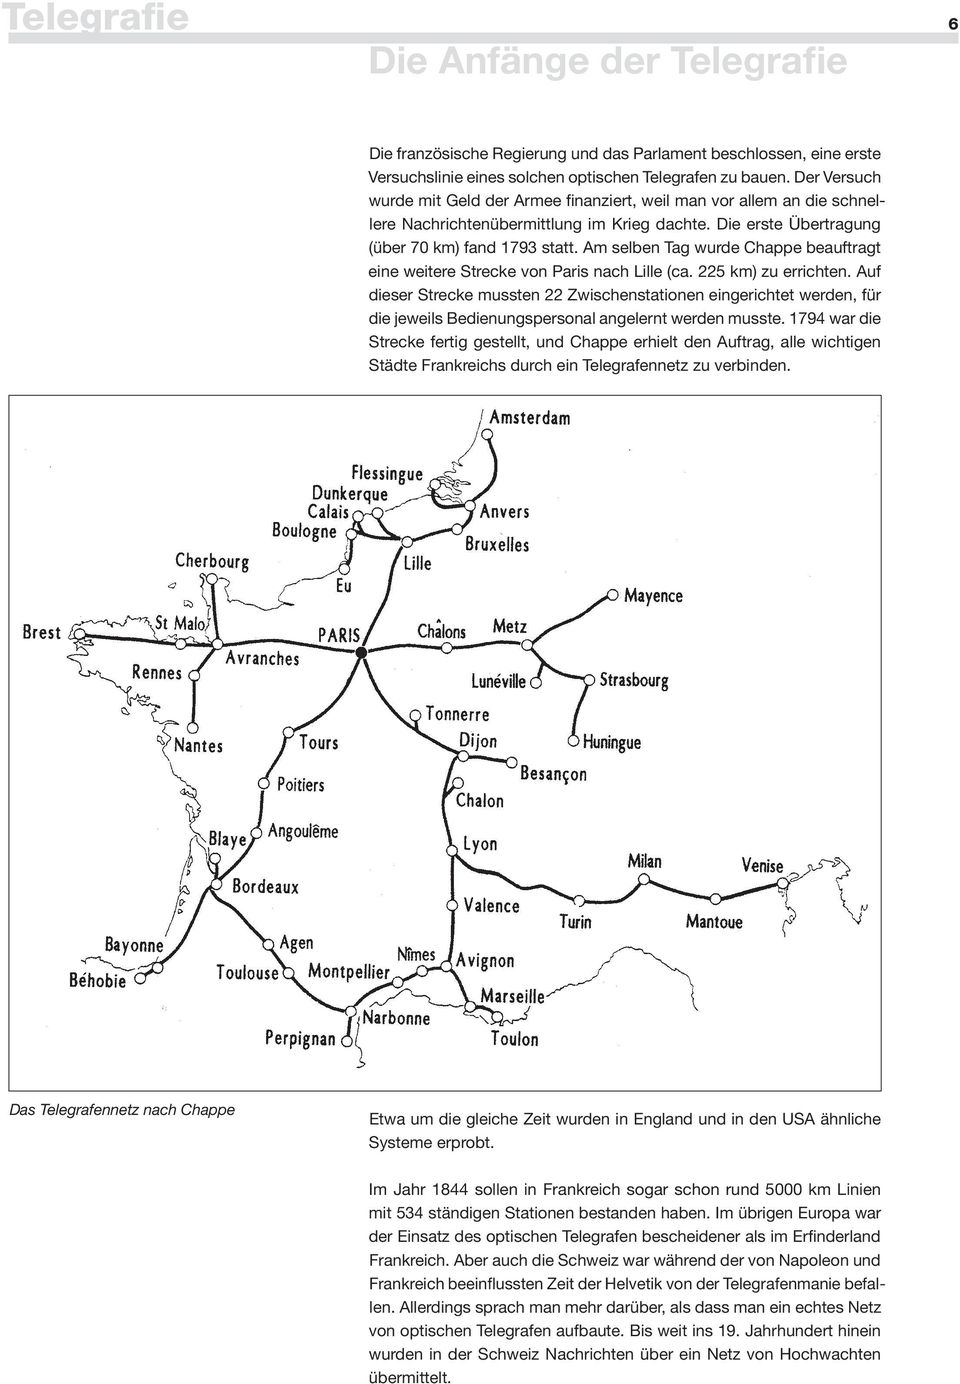 Am selben Tag wurde Chappe beauftragt eine weitere Strecke von Paris nach Lille (ca. 225 km) zu errichten.